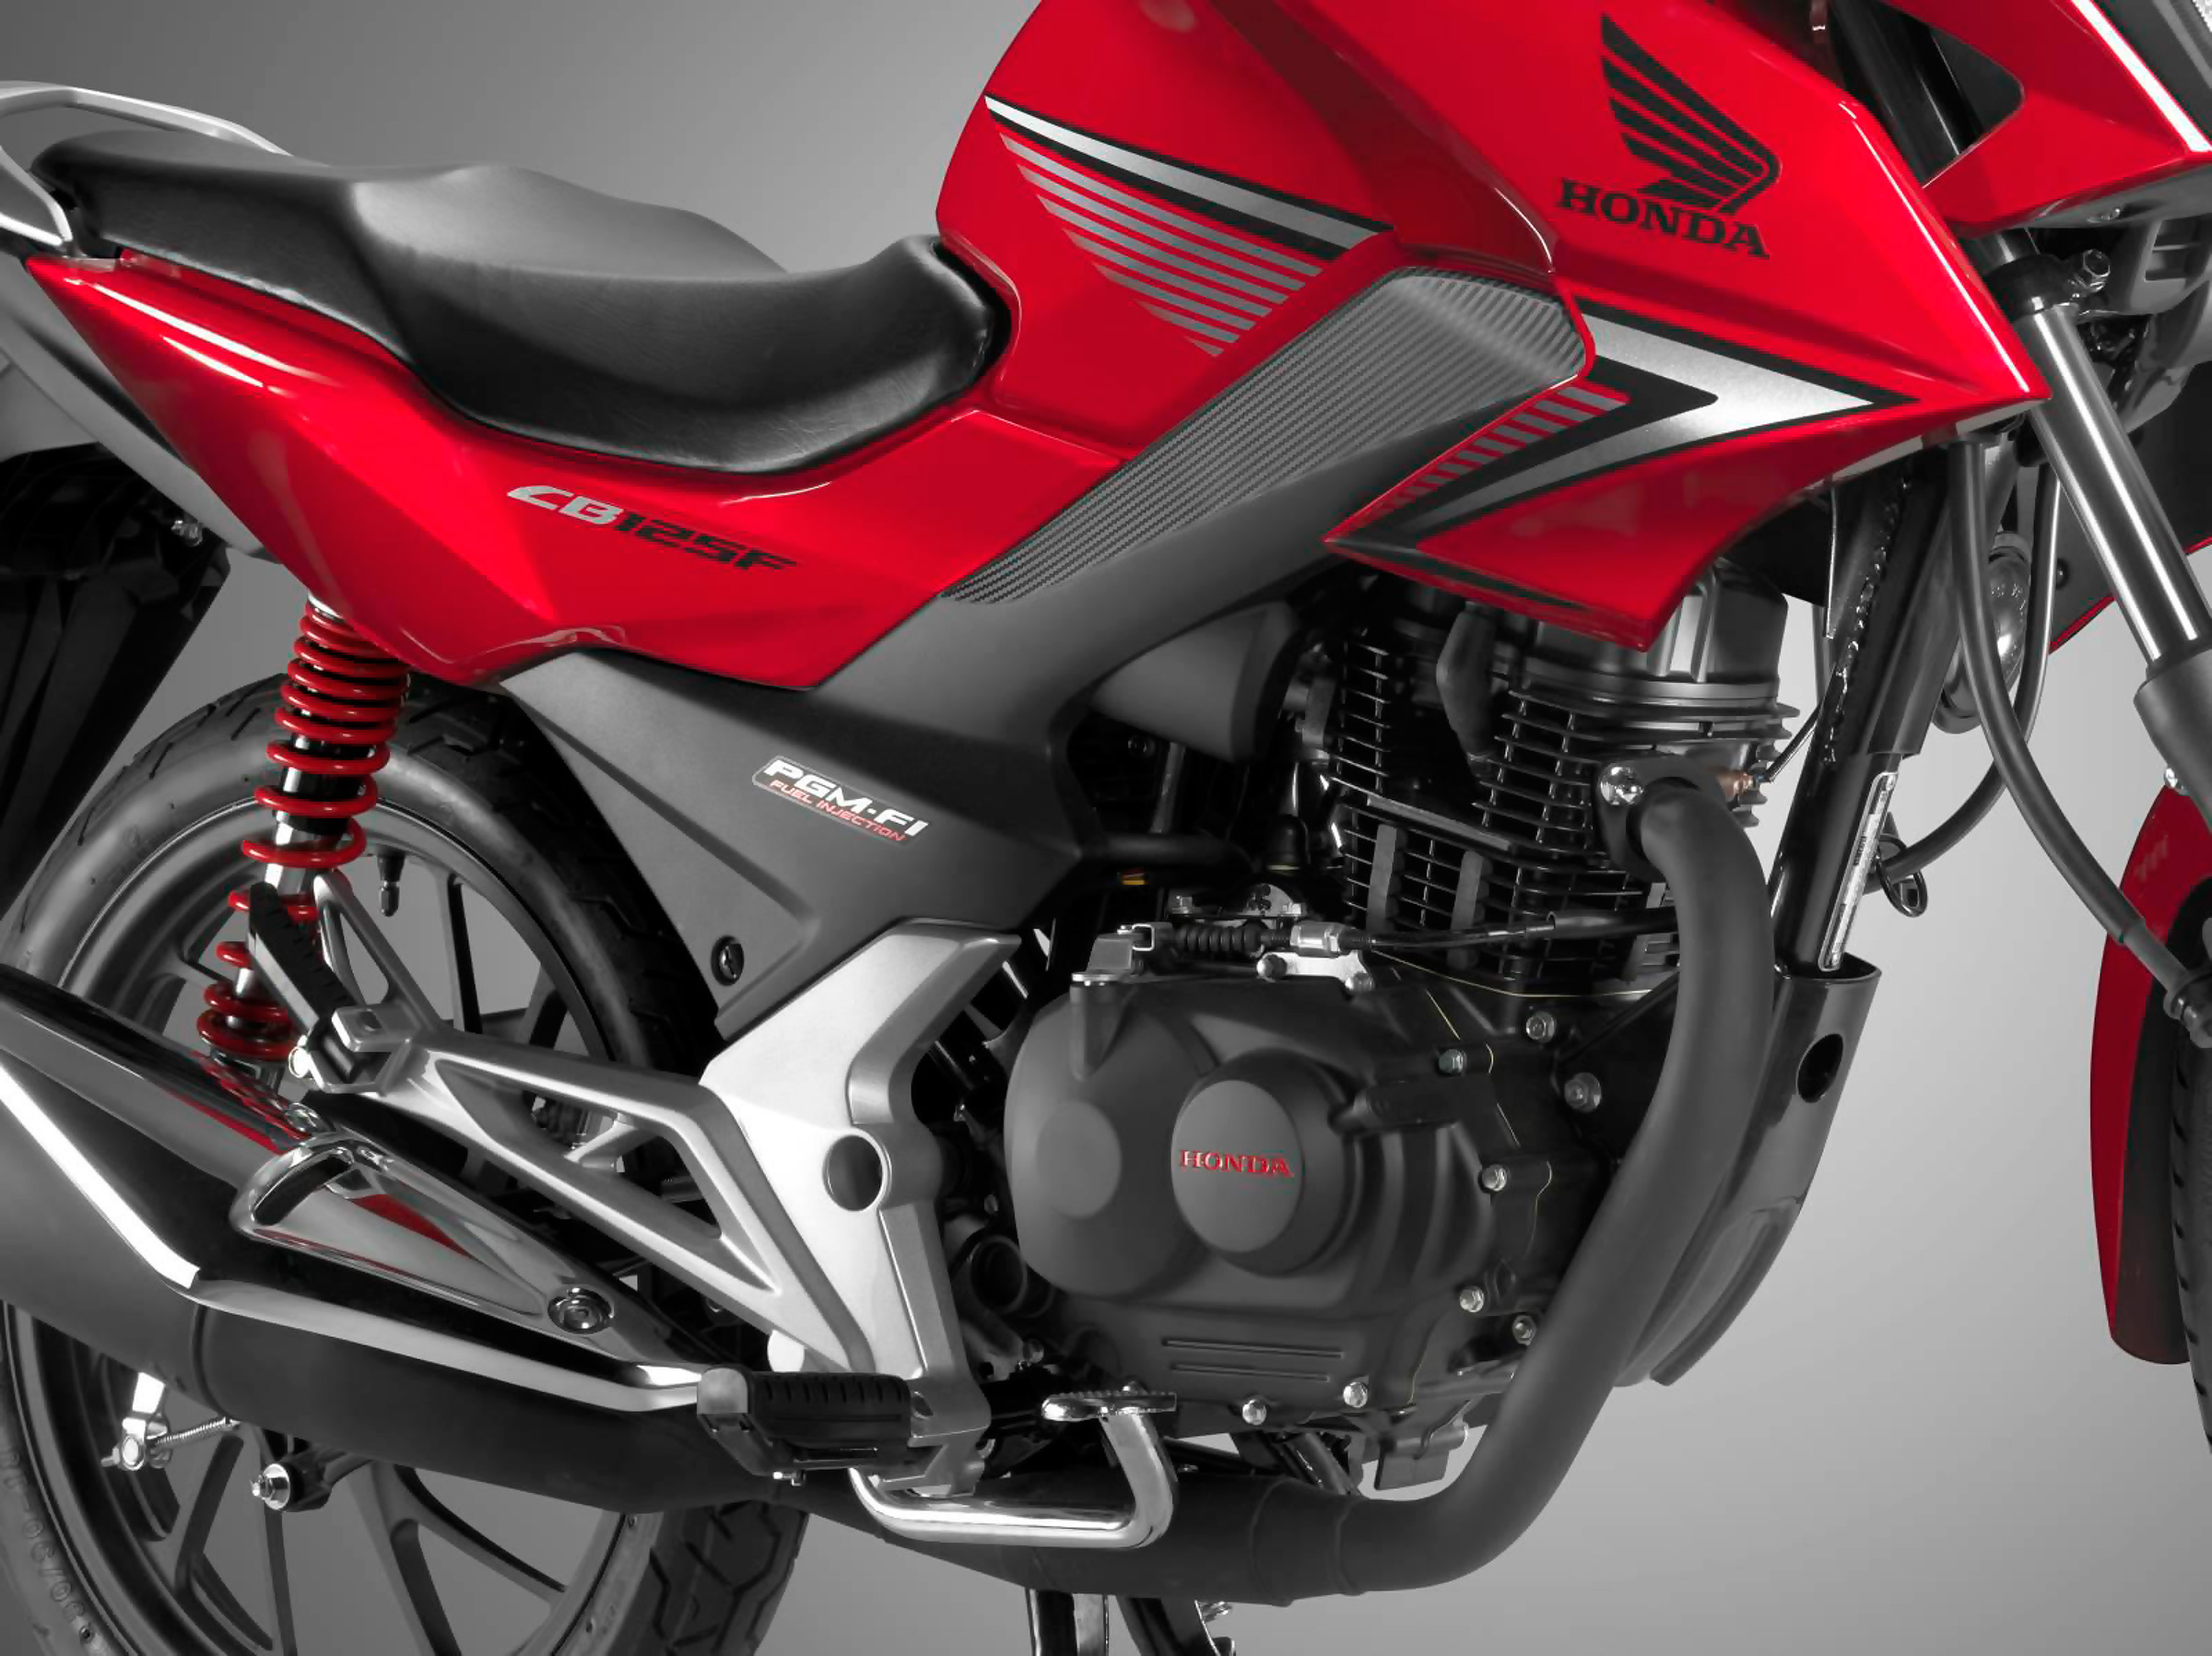 Мотоцикл honda cb 125f 2015 фото, характеристики, обзор, сравнение на базамото